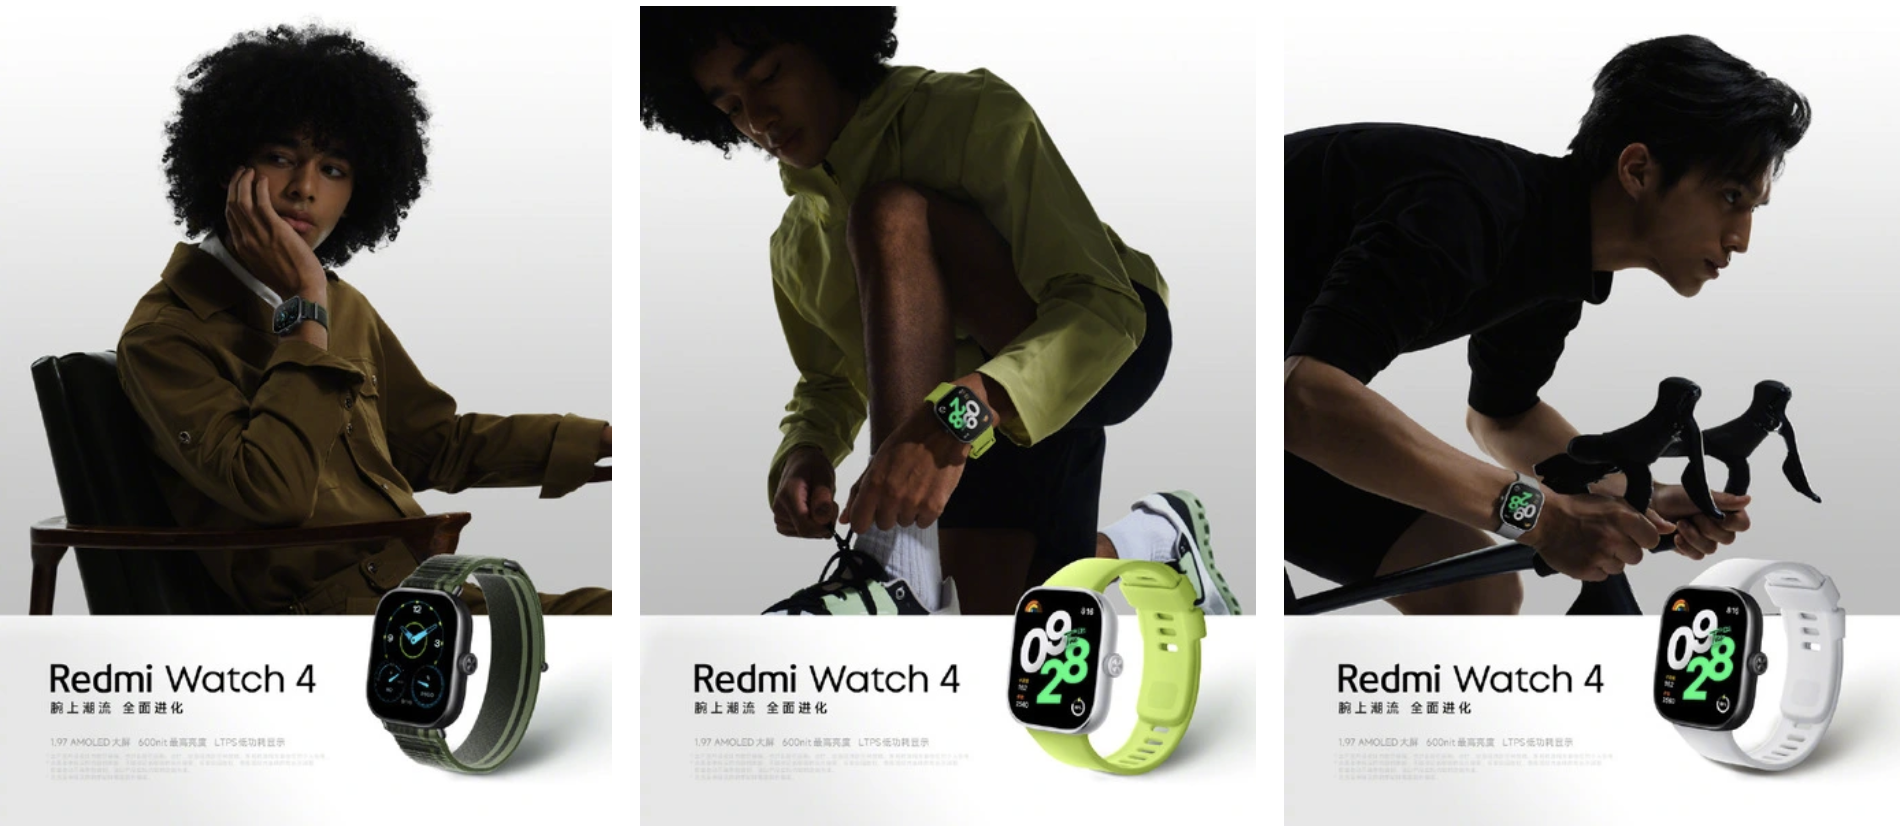 Xiaomi рассказала о характеристиках и материалах корпуса смарт-часов Redmi Watch 4